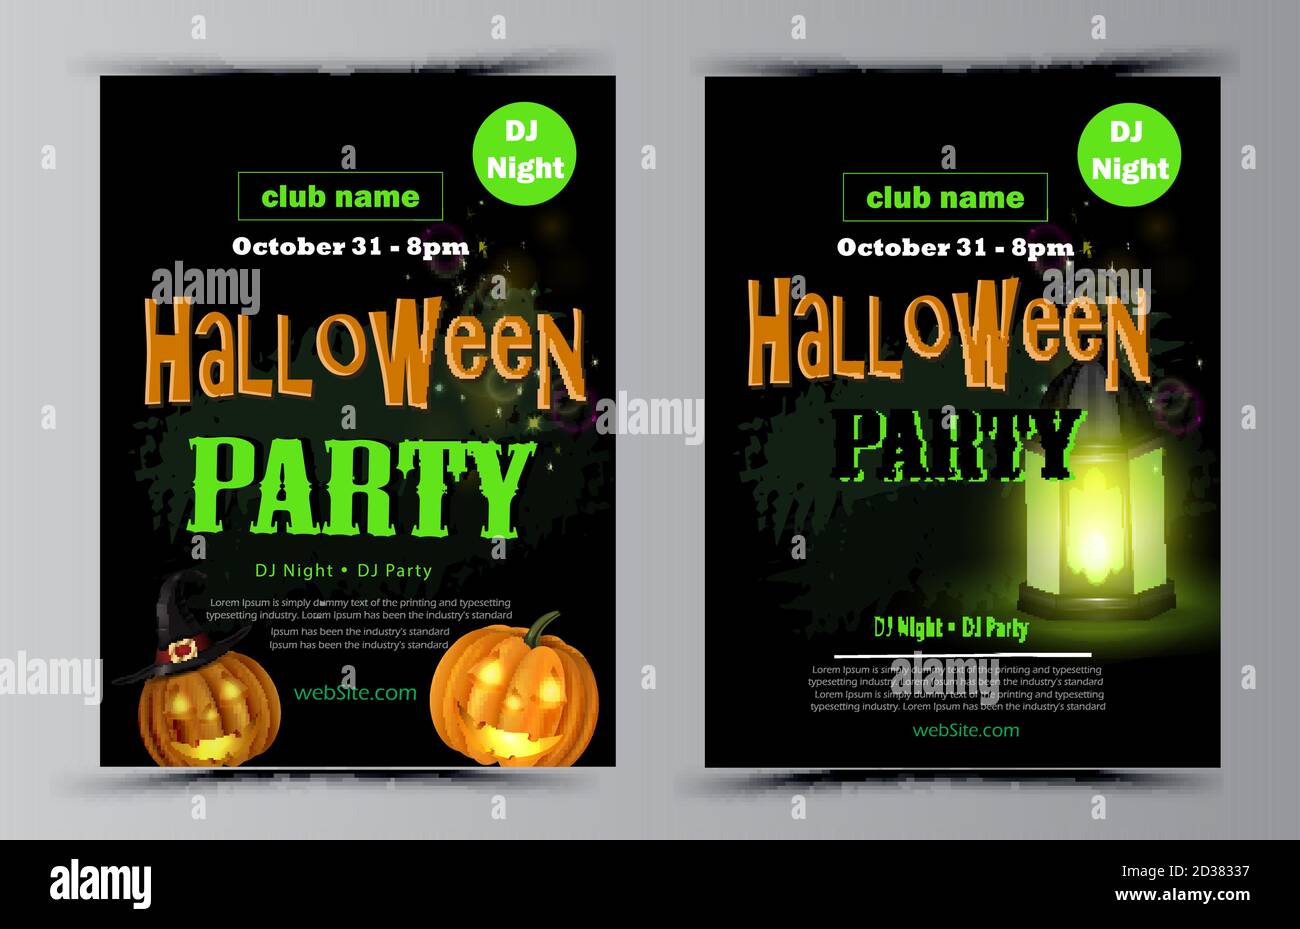 Halloween party flyer set vector Stock Vector Image & Art - Alamy